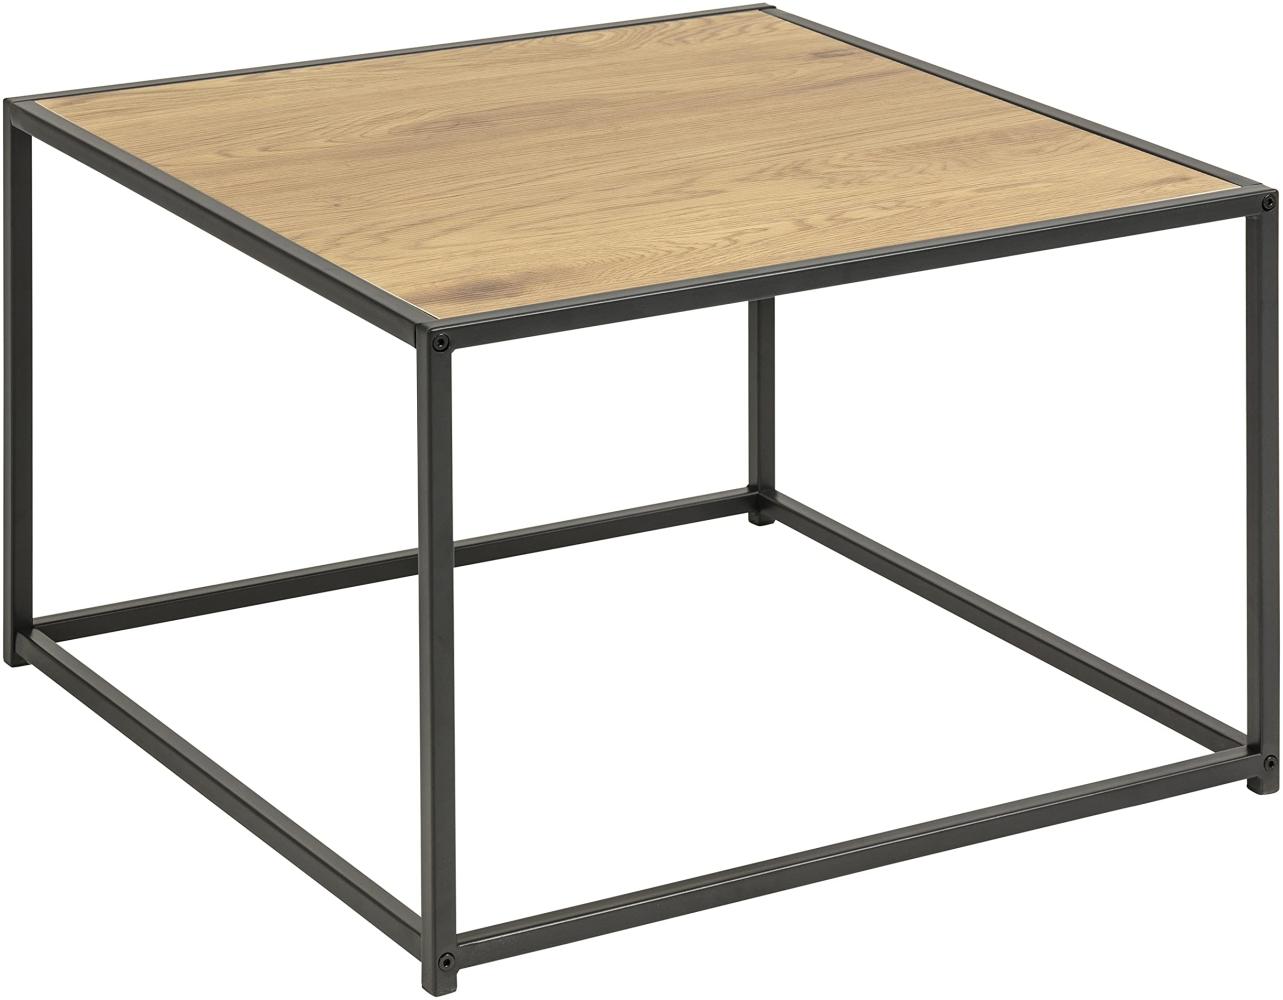 Amazon-Marke: AC Design Furniture Jörn Quadratischer Couchtisch mit Tischplatte in Wildeiche Optik und Schwarzem Stahlsockel, Sofatisch, Wohnzimmermöbel, 60 x 40 x 60 cm Bild 1